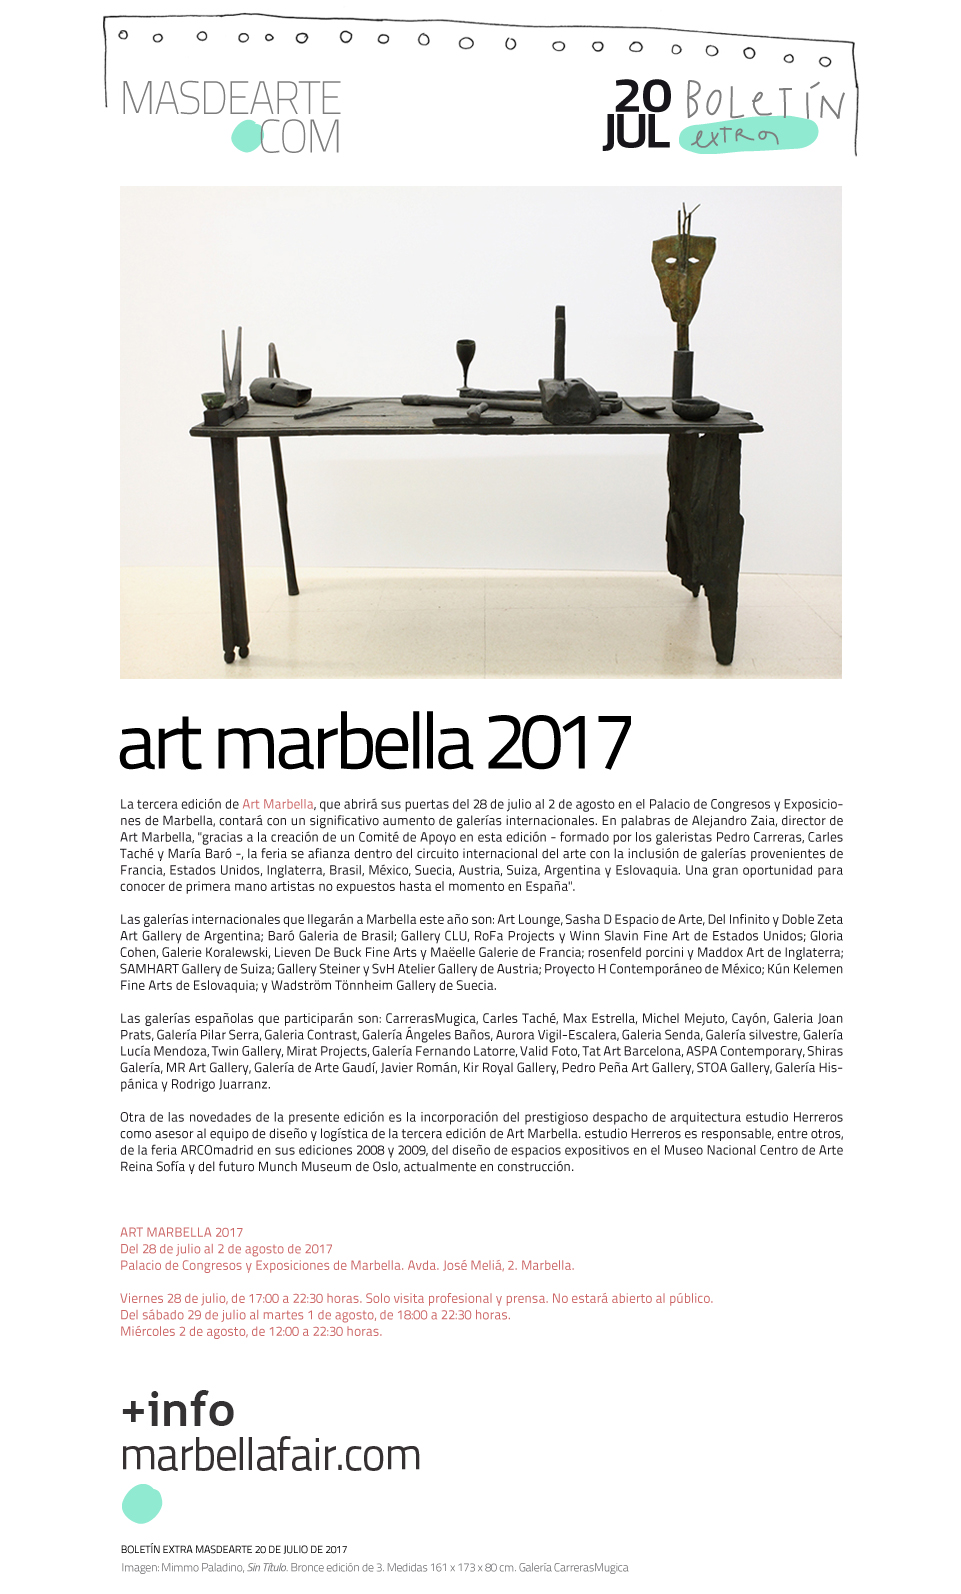 Art Marbella, del 28 de julio al 2 de agosto de 2017.